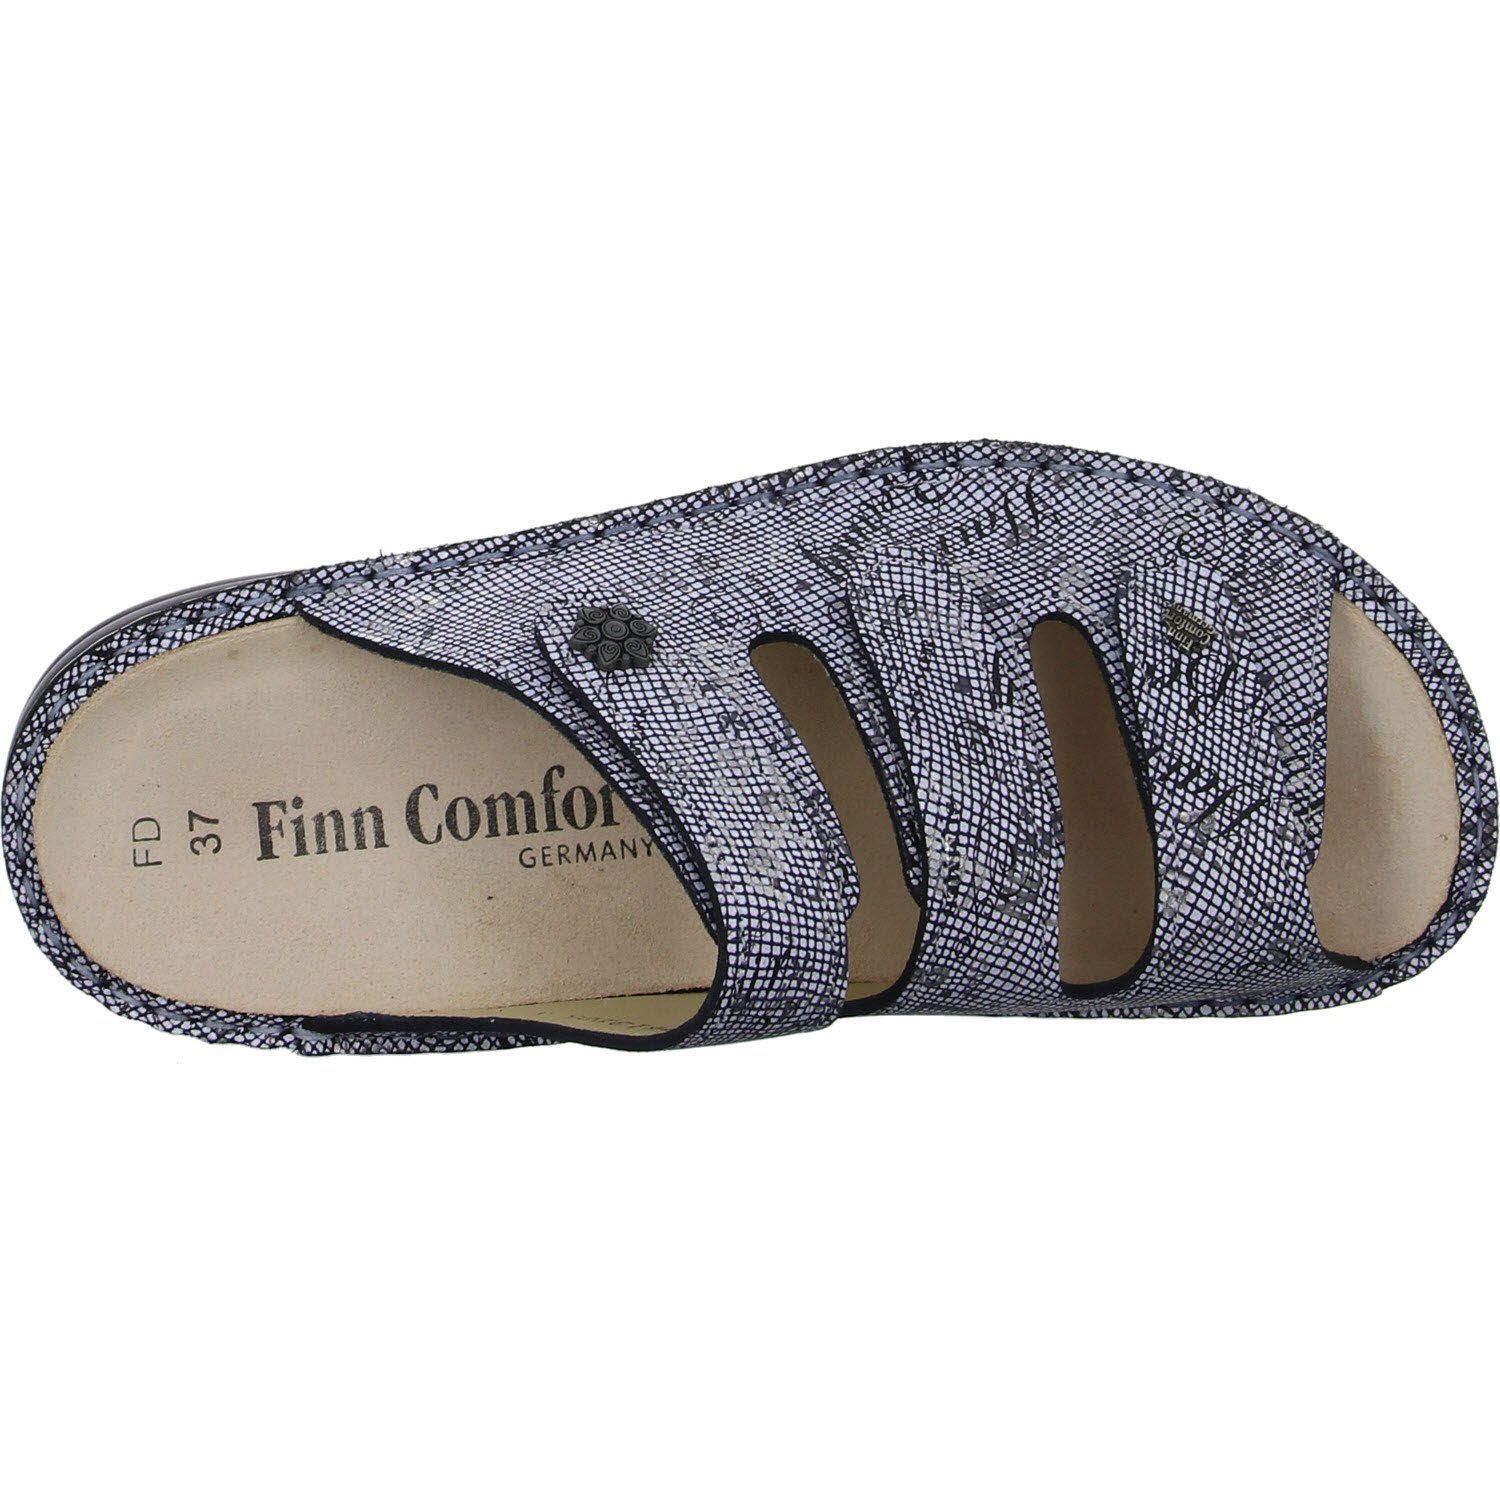 MENORCA-S Finn Comfort Pantolette